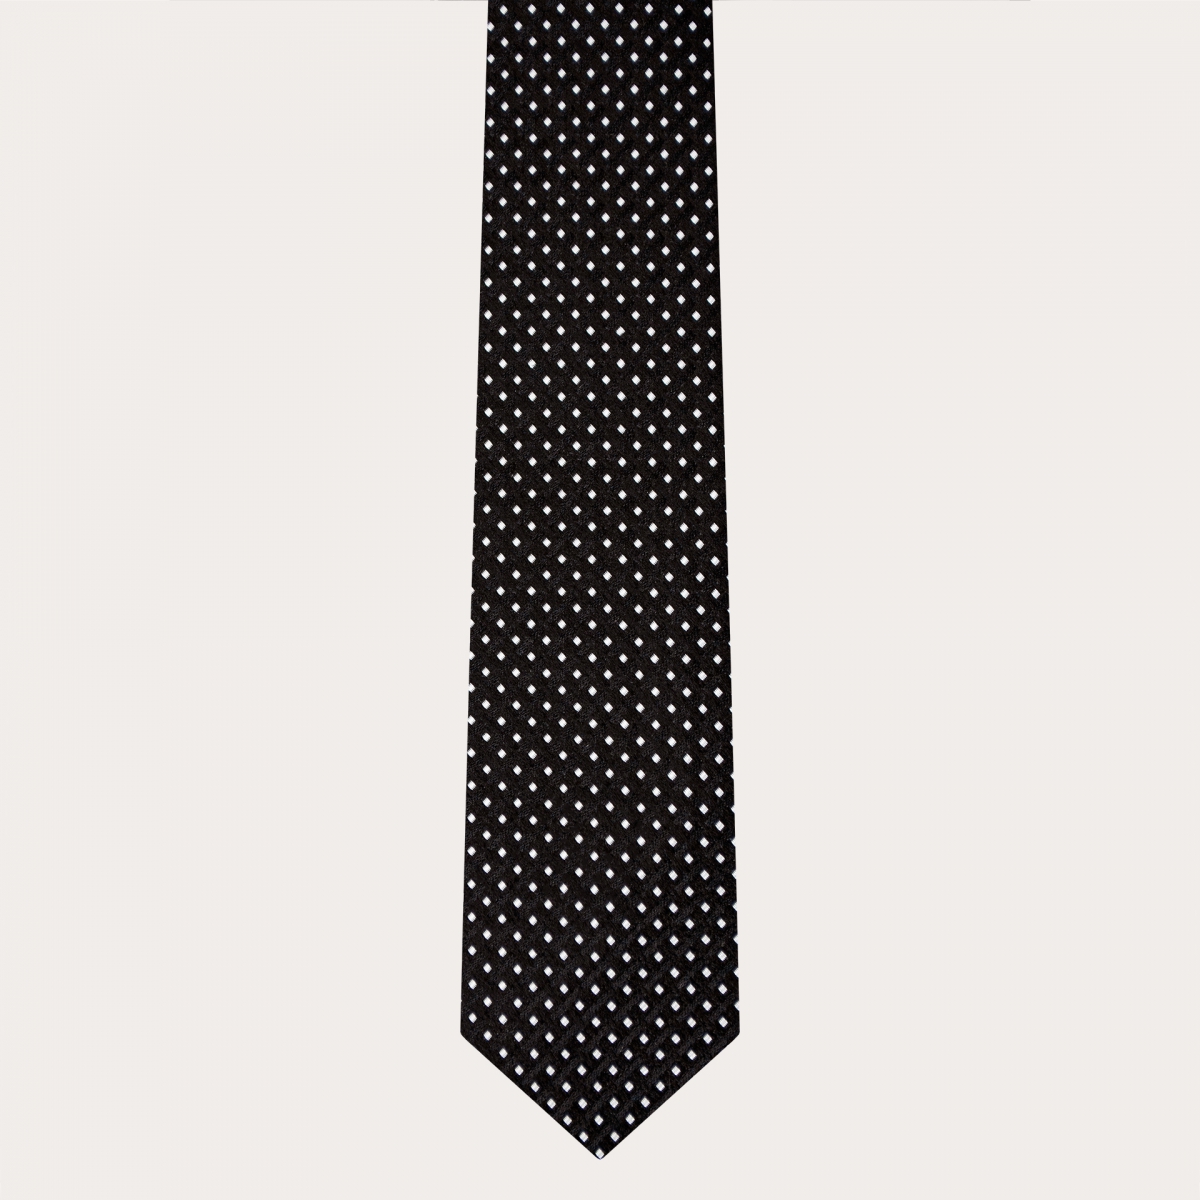 Cravate élégante en soie jacquard, noire à motif pointillé géométrique